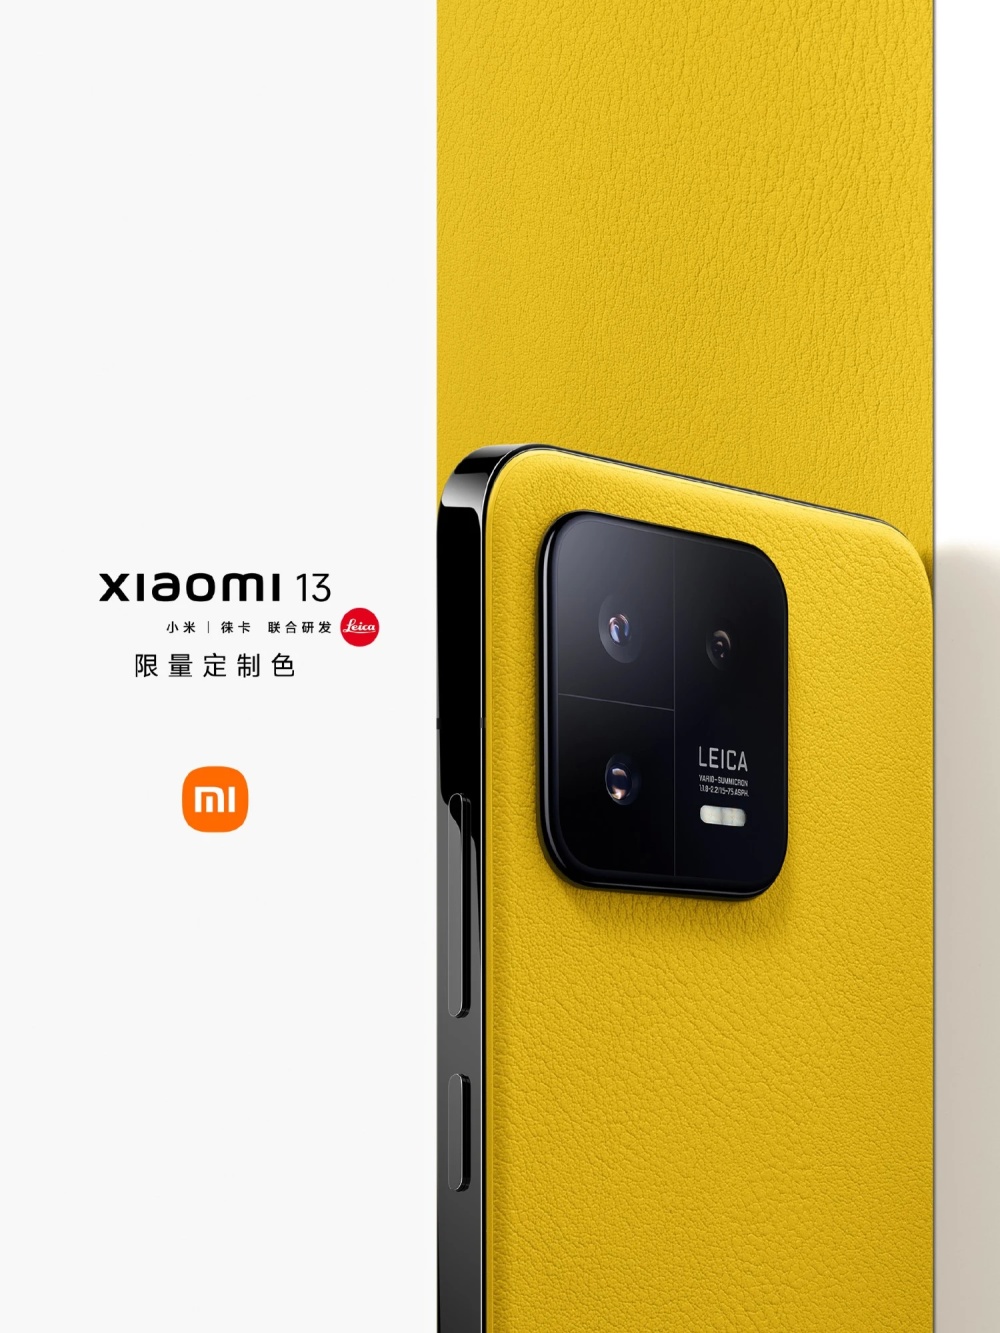 Базовый Xiaomi 13 тоже получил яркие расцветки в стиле 13 Ultra